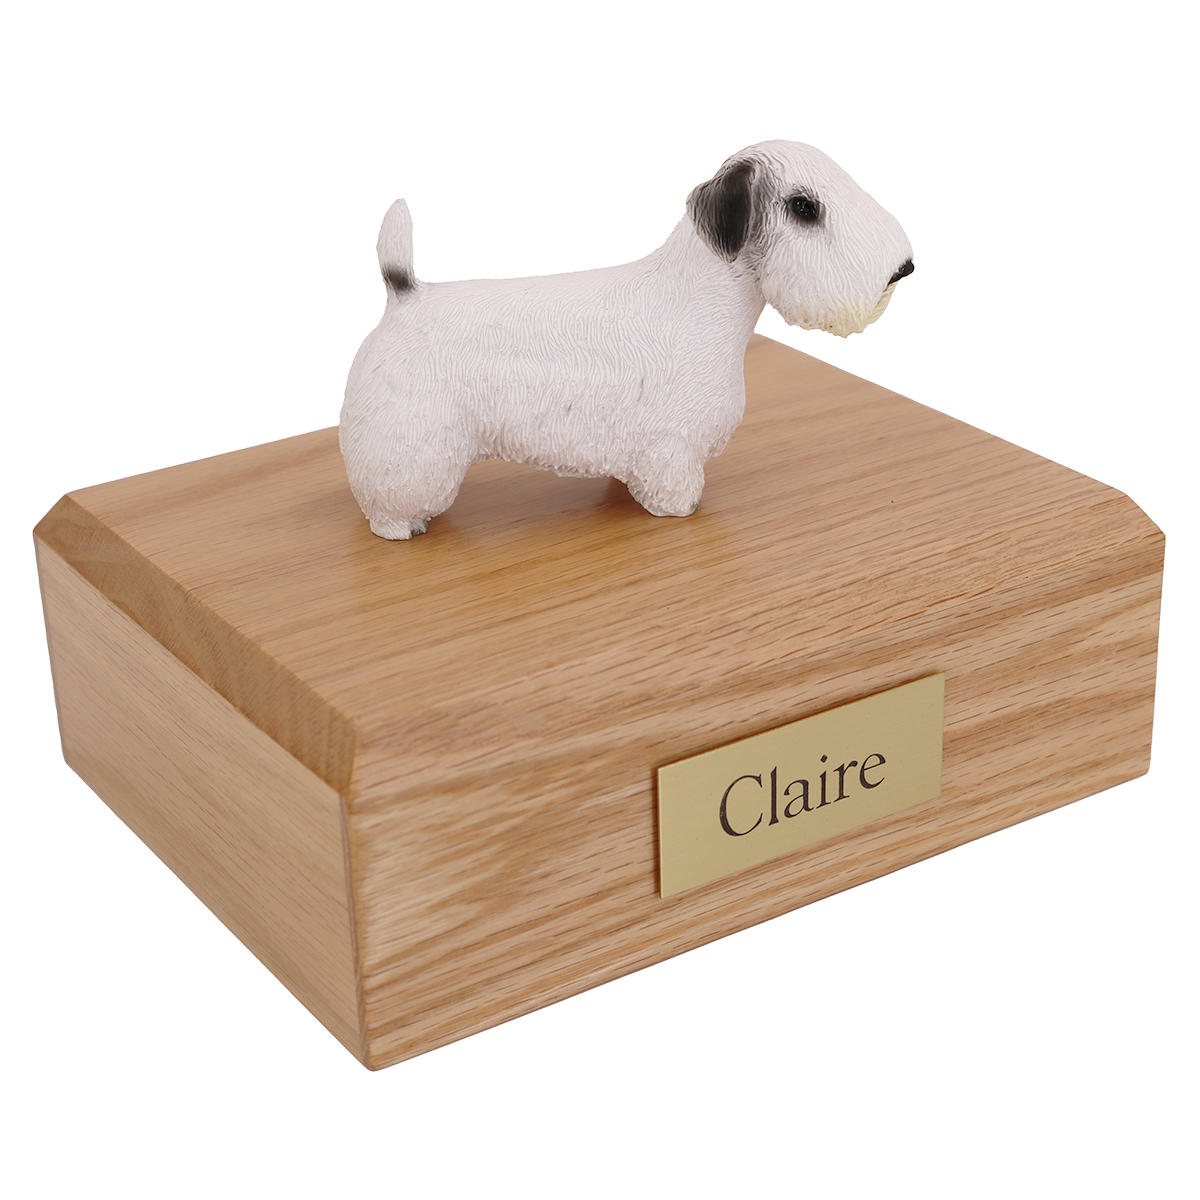 Dog, Sealyham Terrier - Figurine Urn